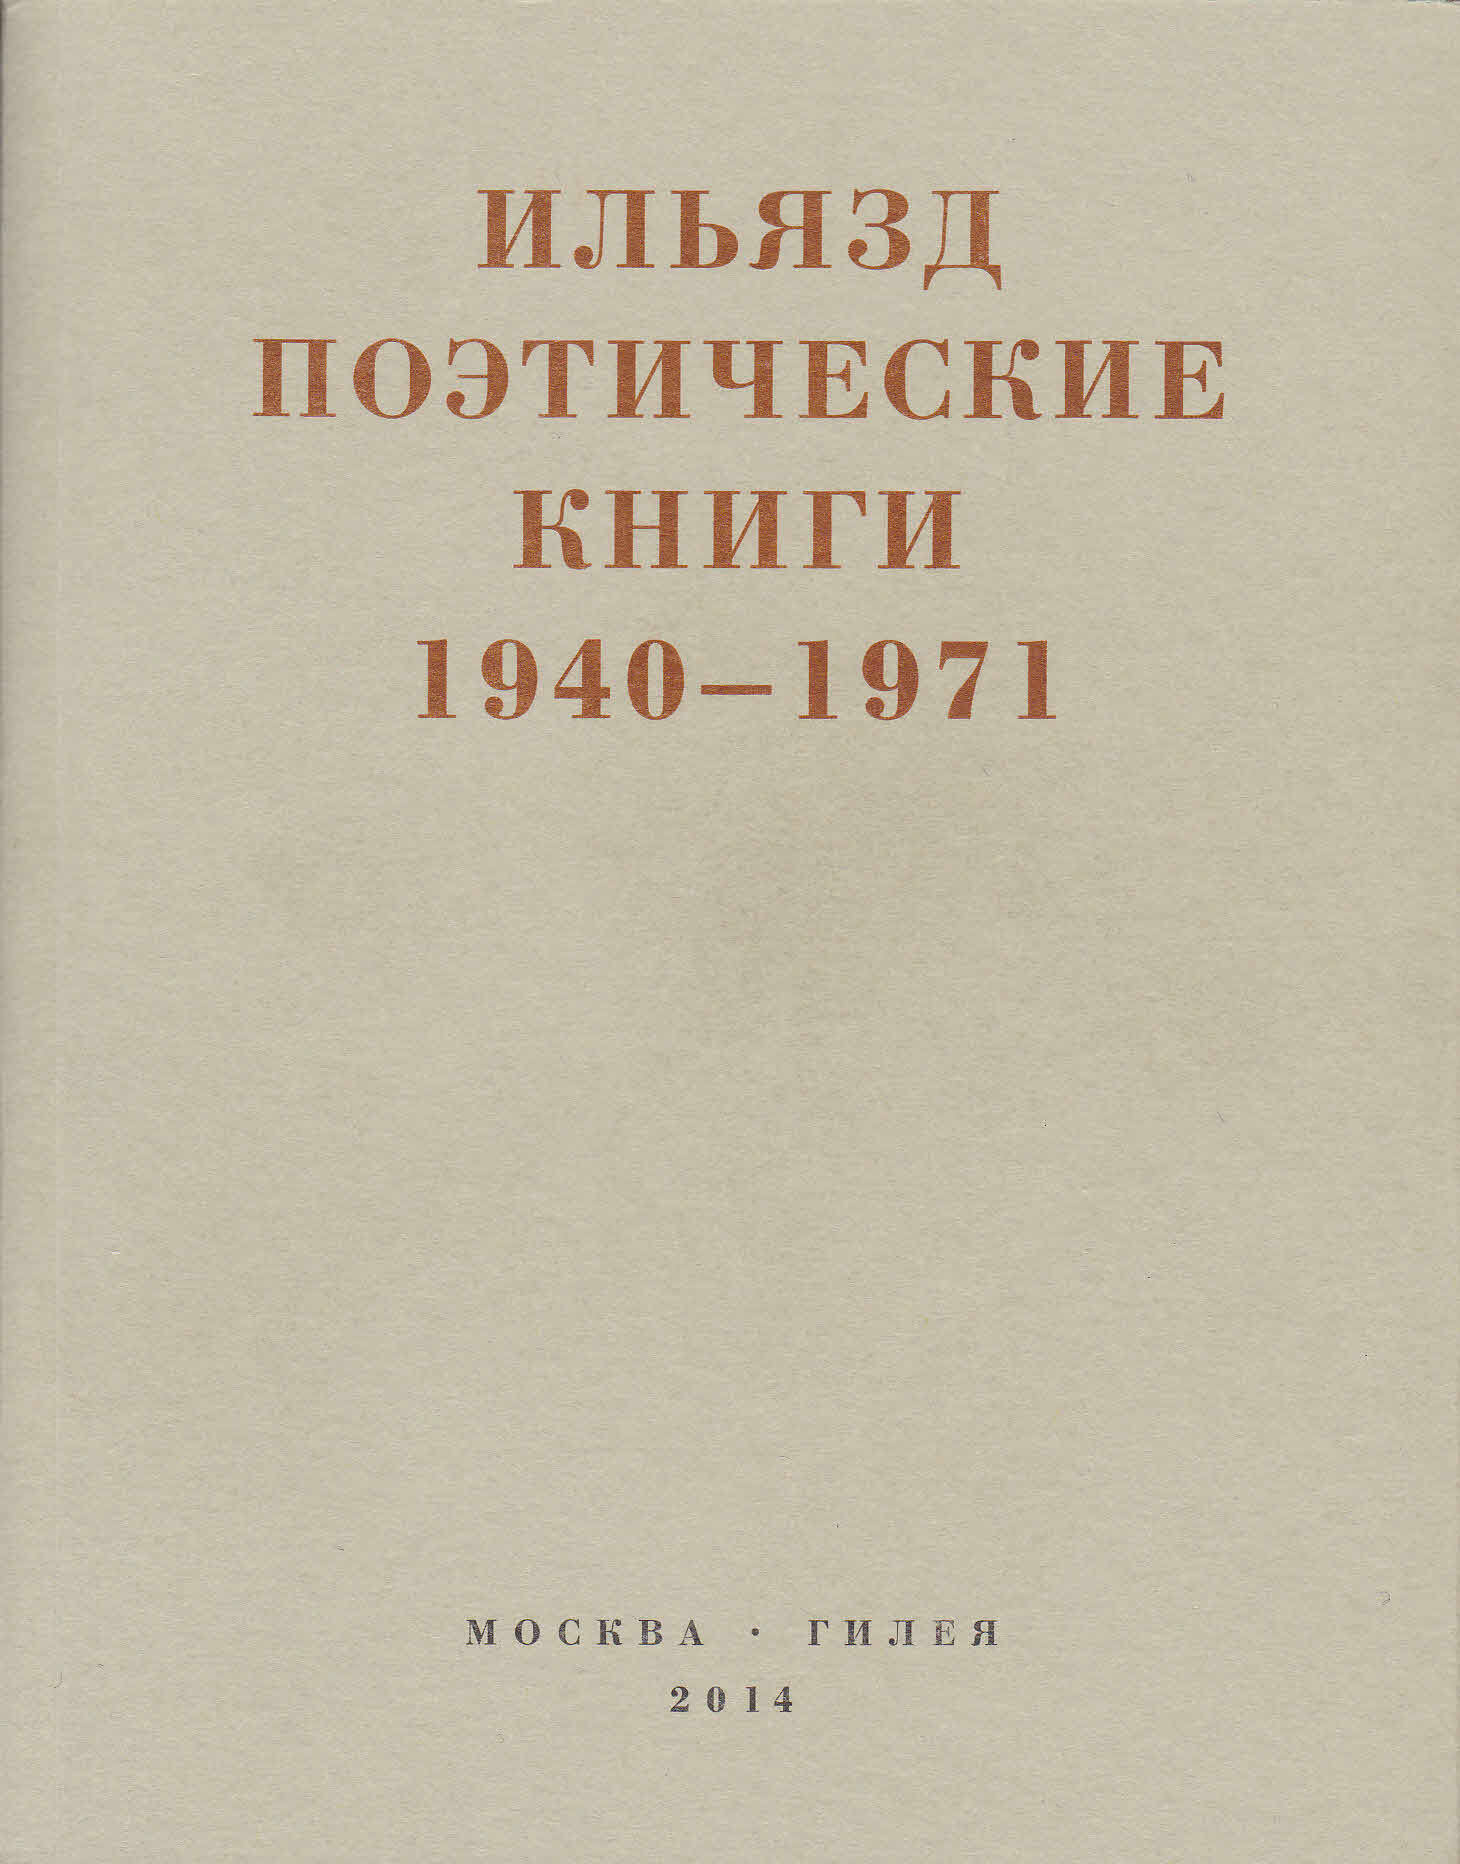 Поэтические книги. 1940-1971 (fb2)